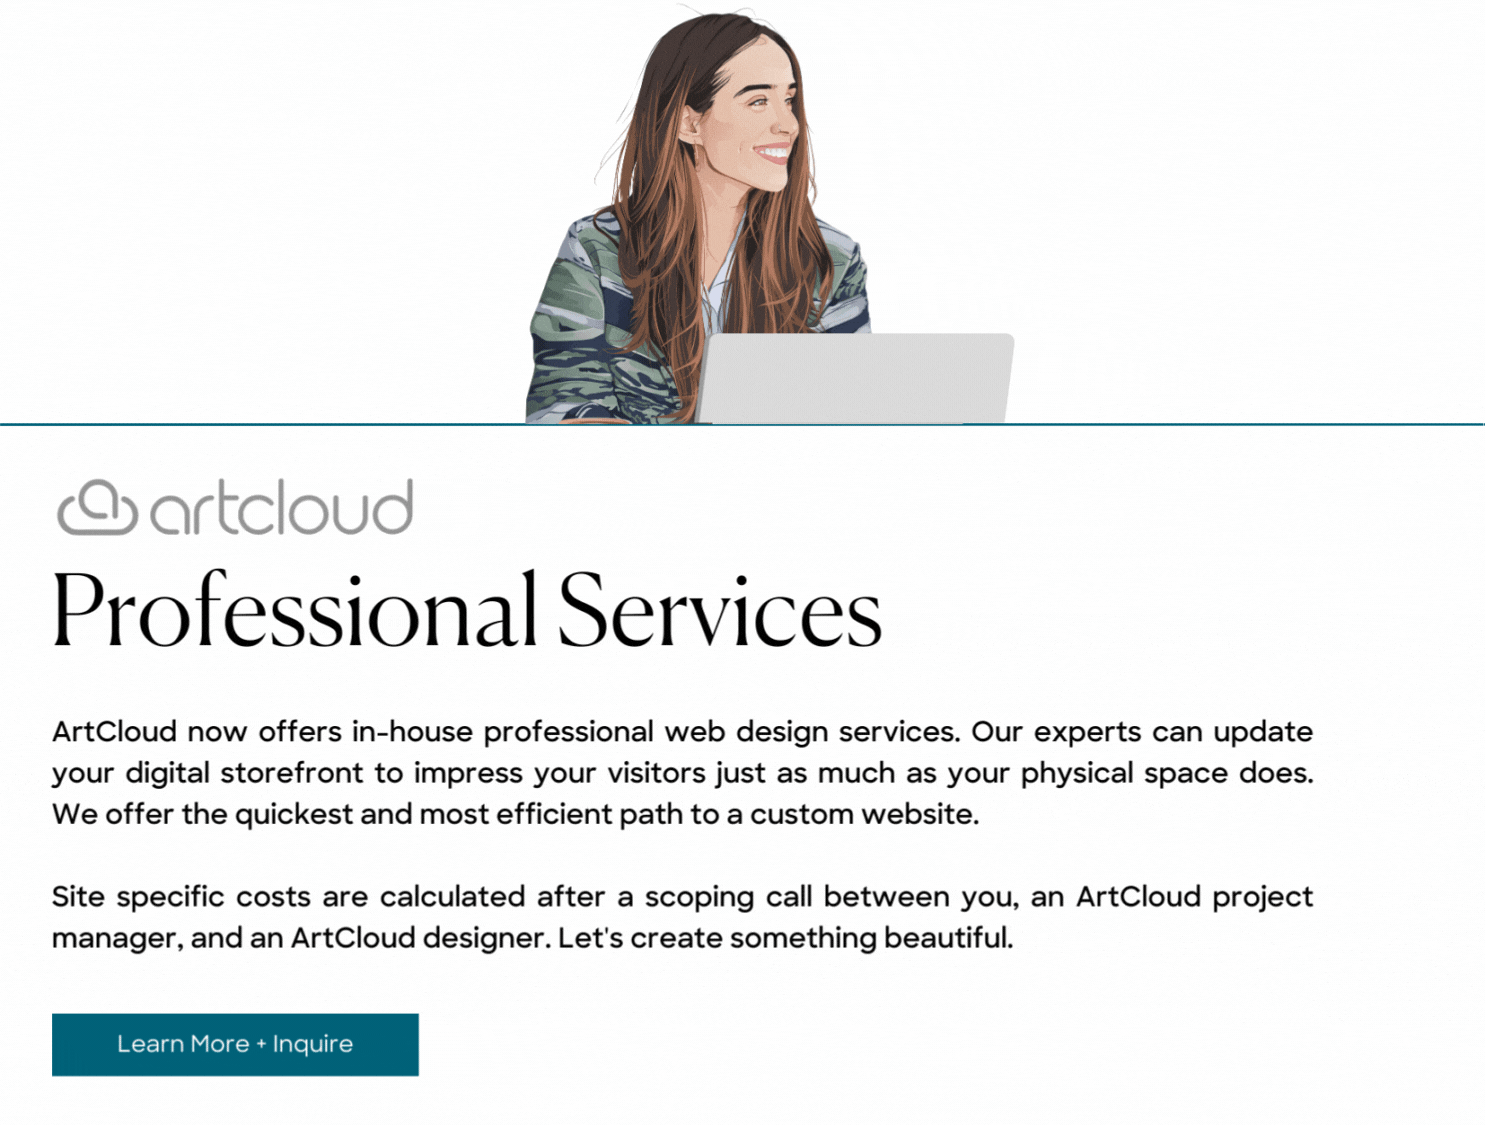 ArtCloud Professional Services